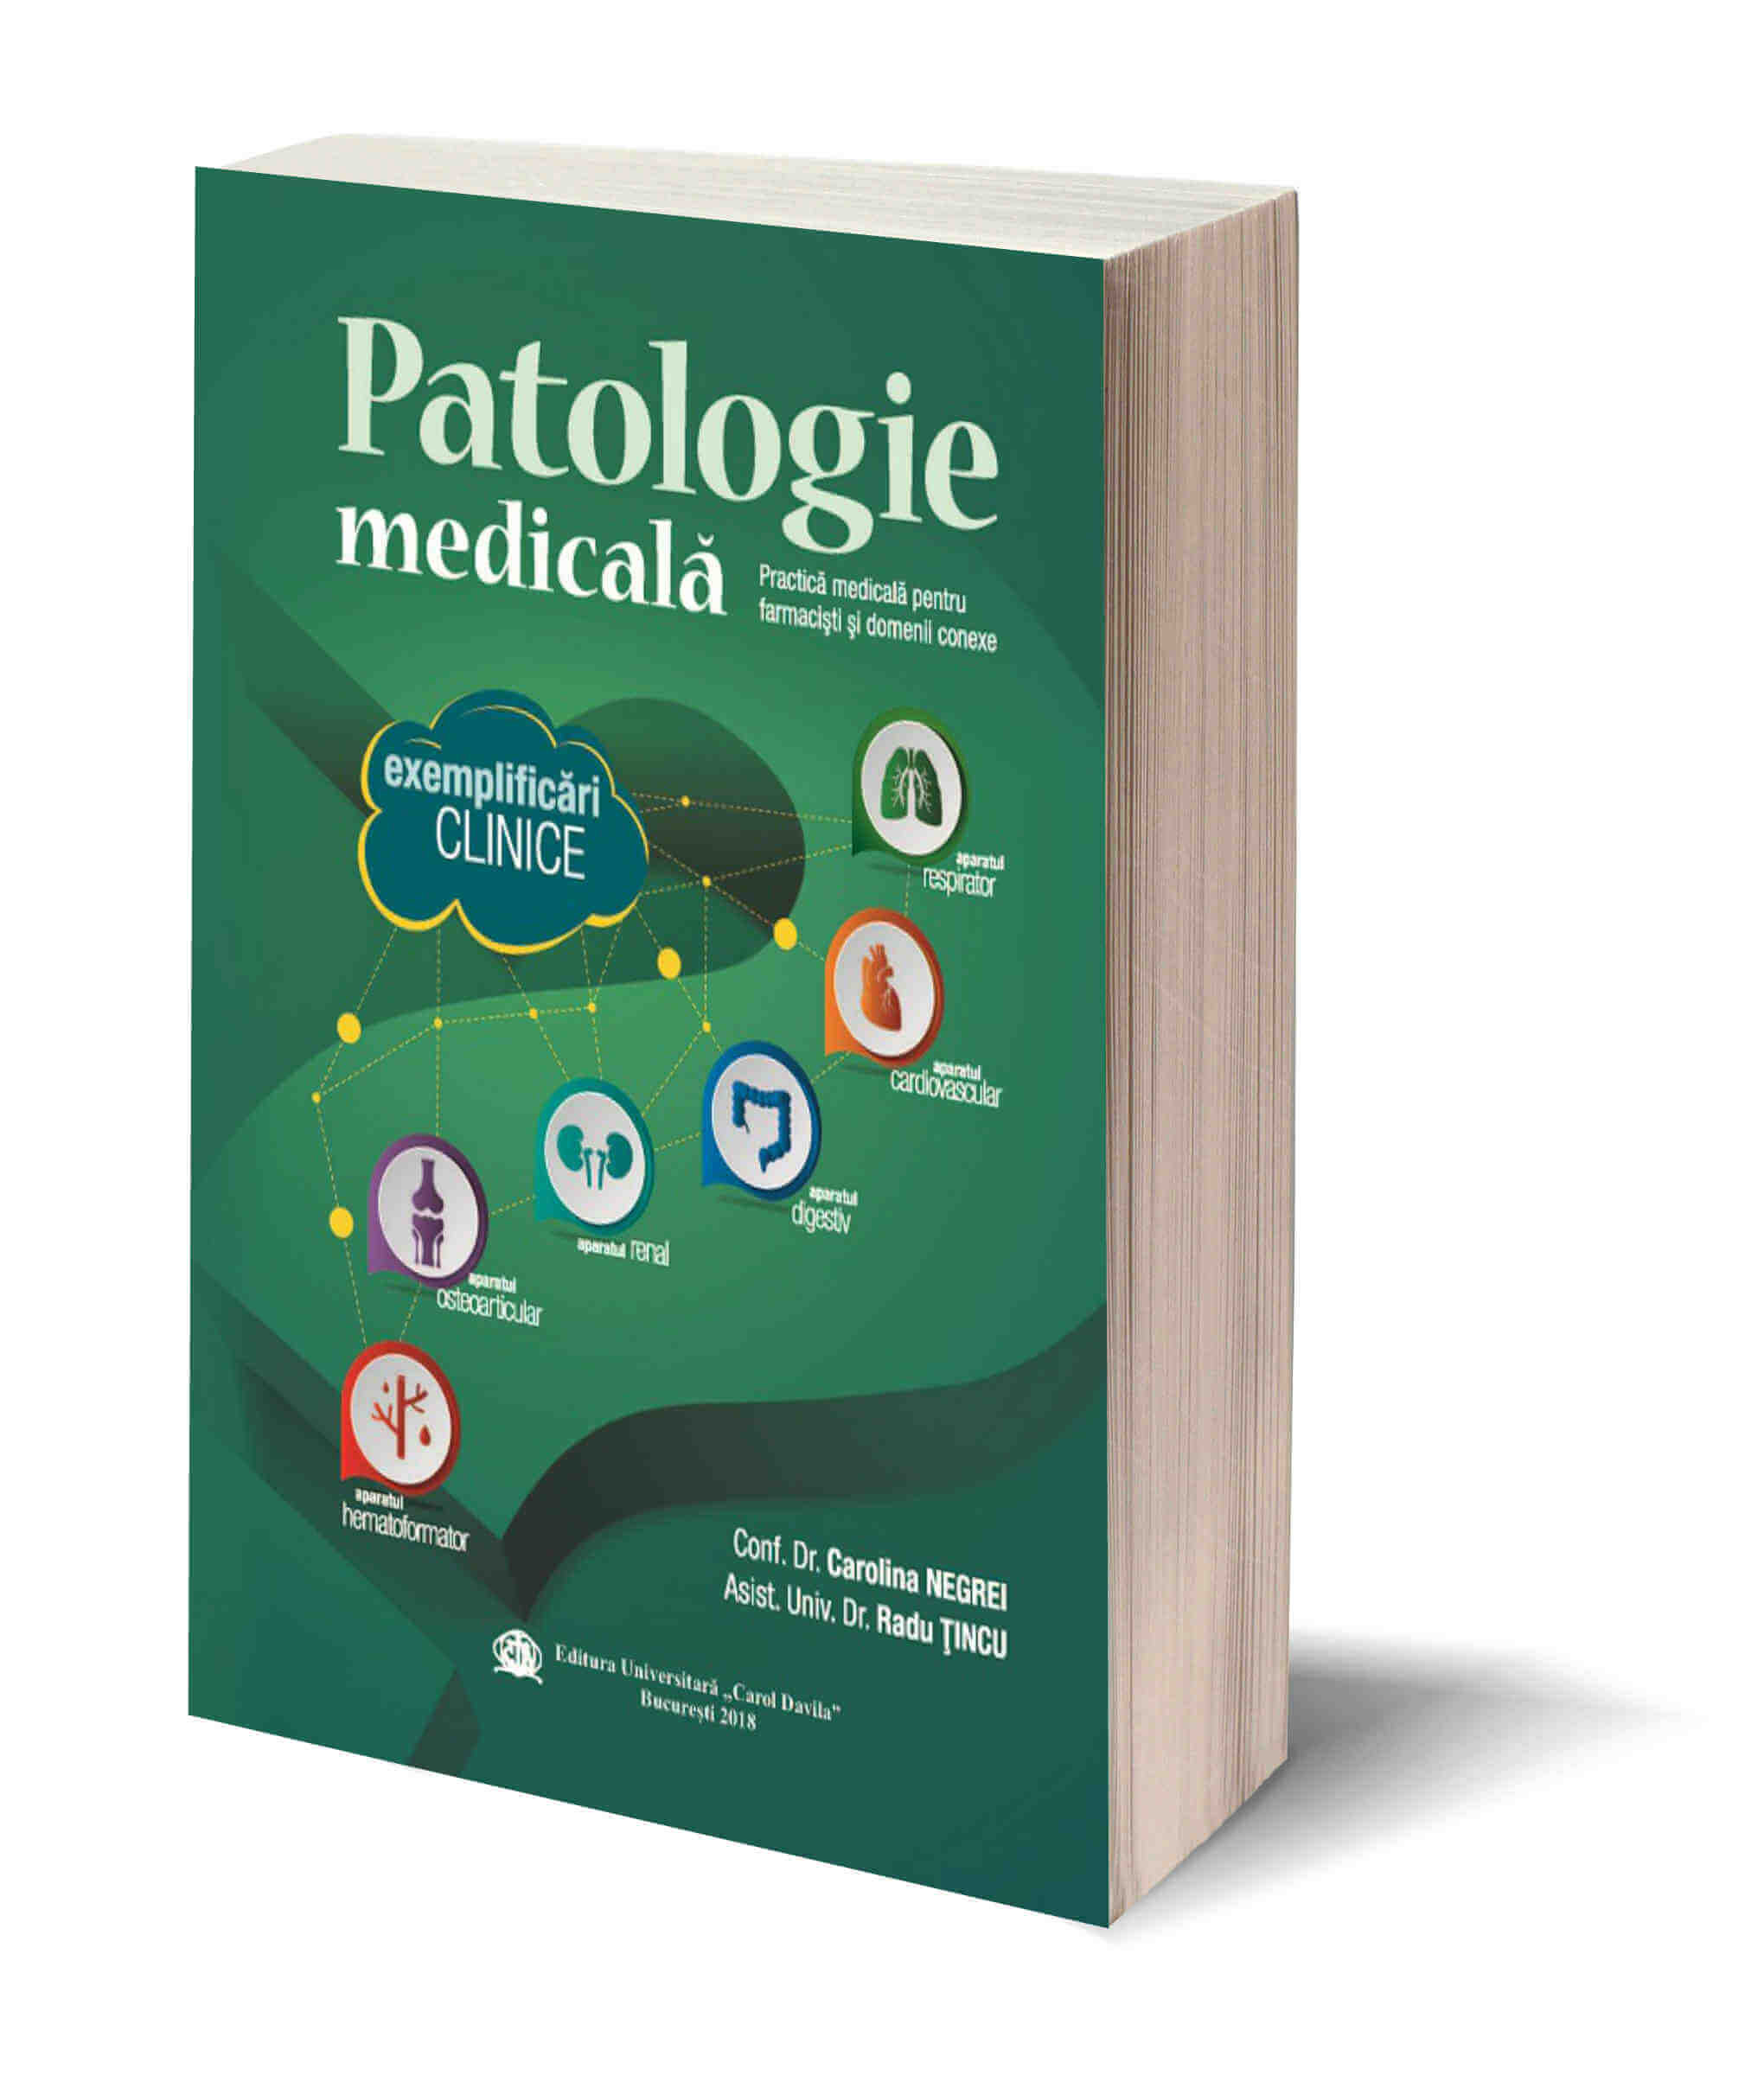 Patologie medicala – Practica medicala pentru farmacisti si domenii conexe